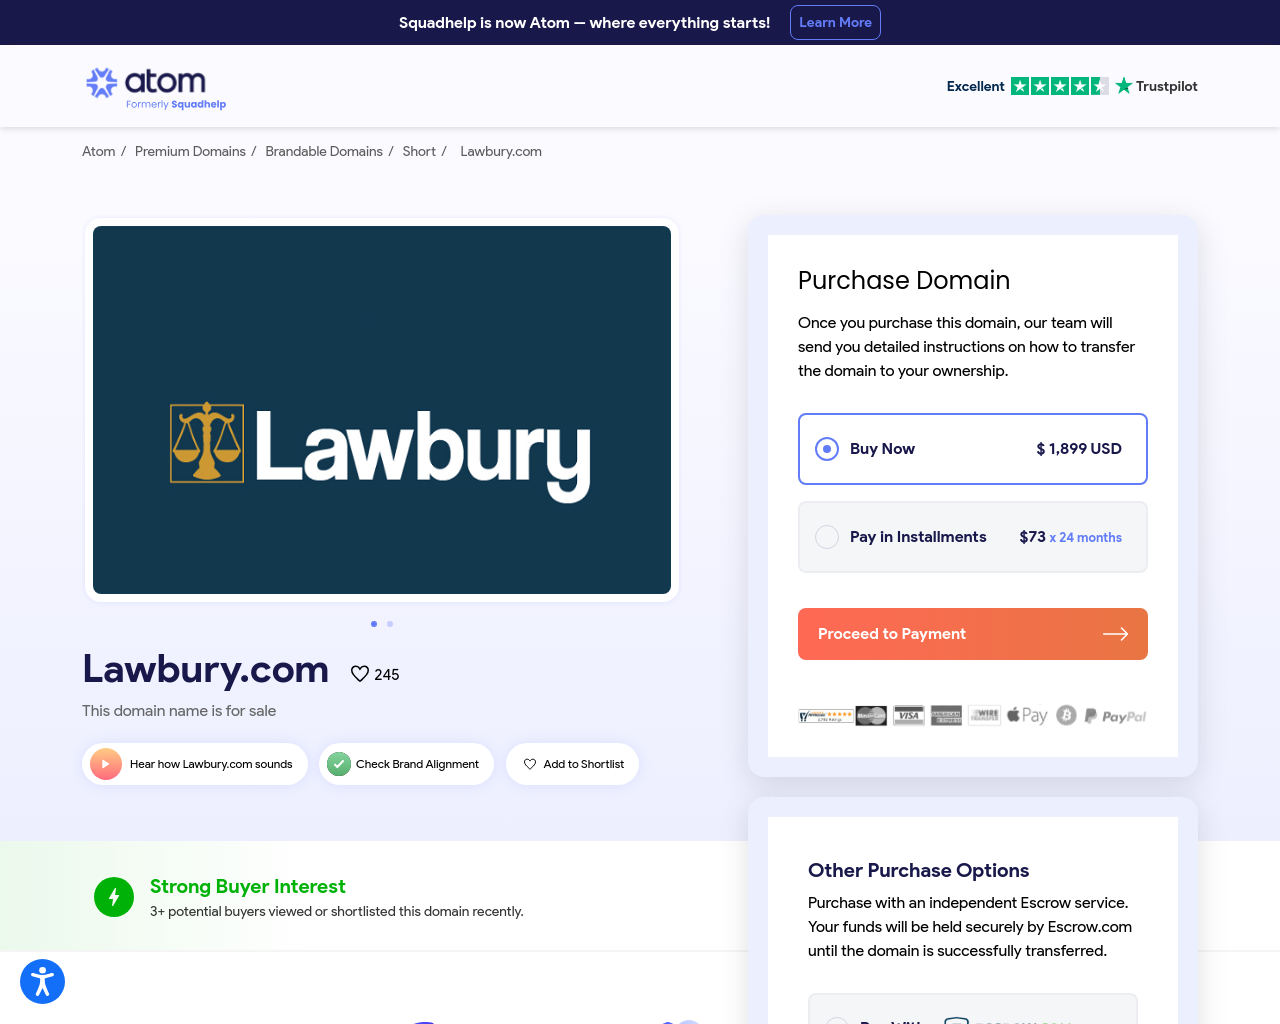 lawbury.com